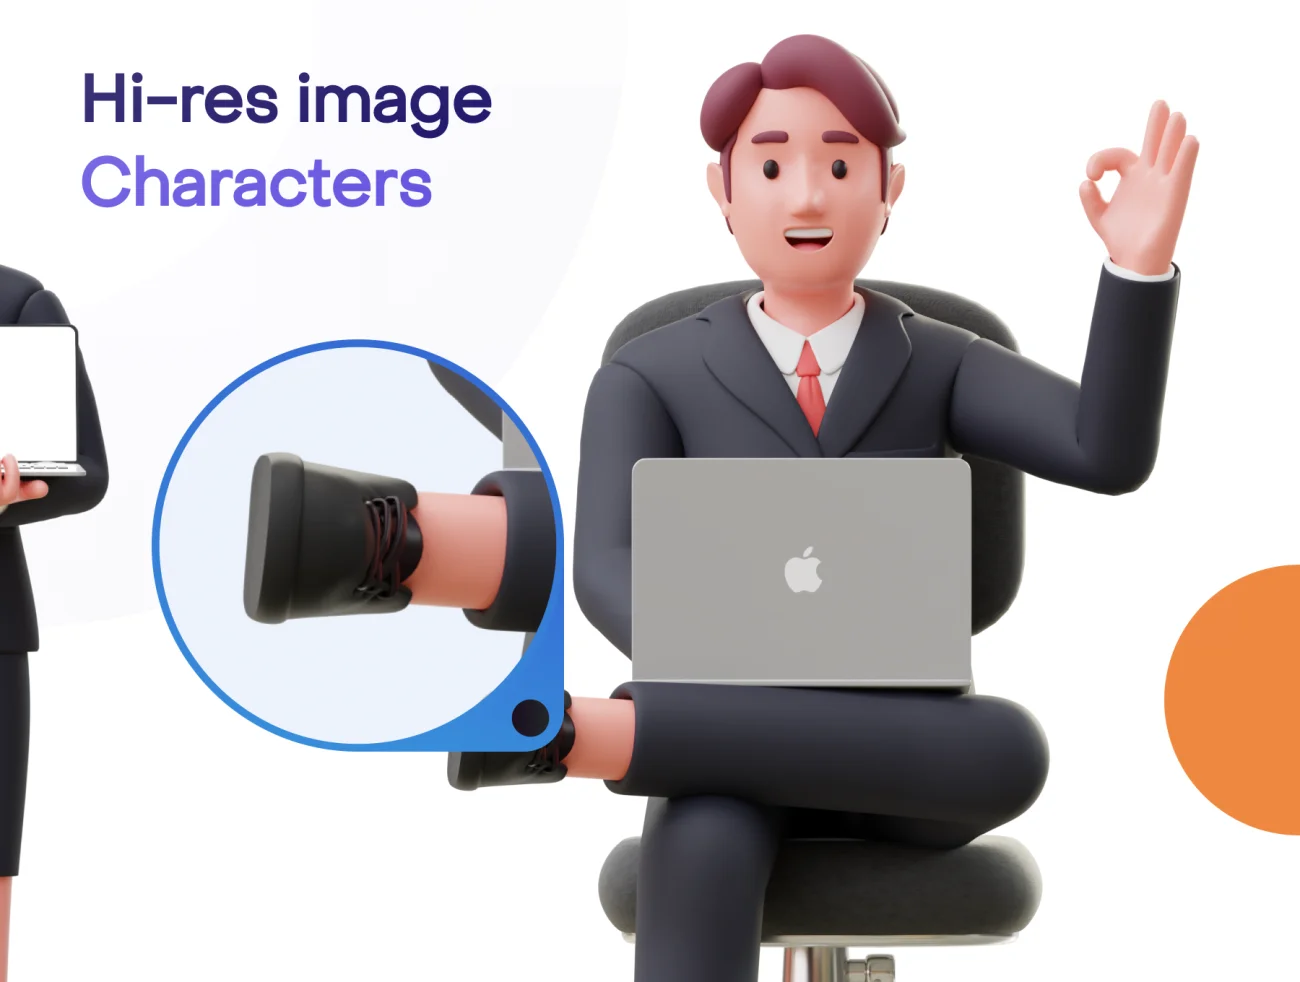 商人商务角色3D模型 Jobly - Businessman 3D Characters-3D/图标-到位啦UI